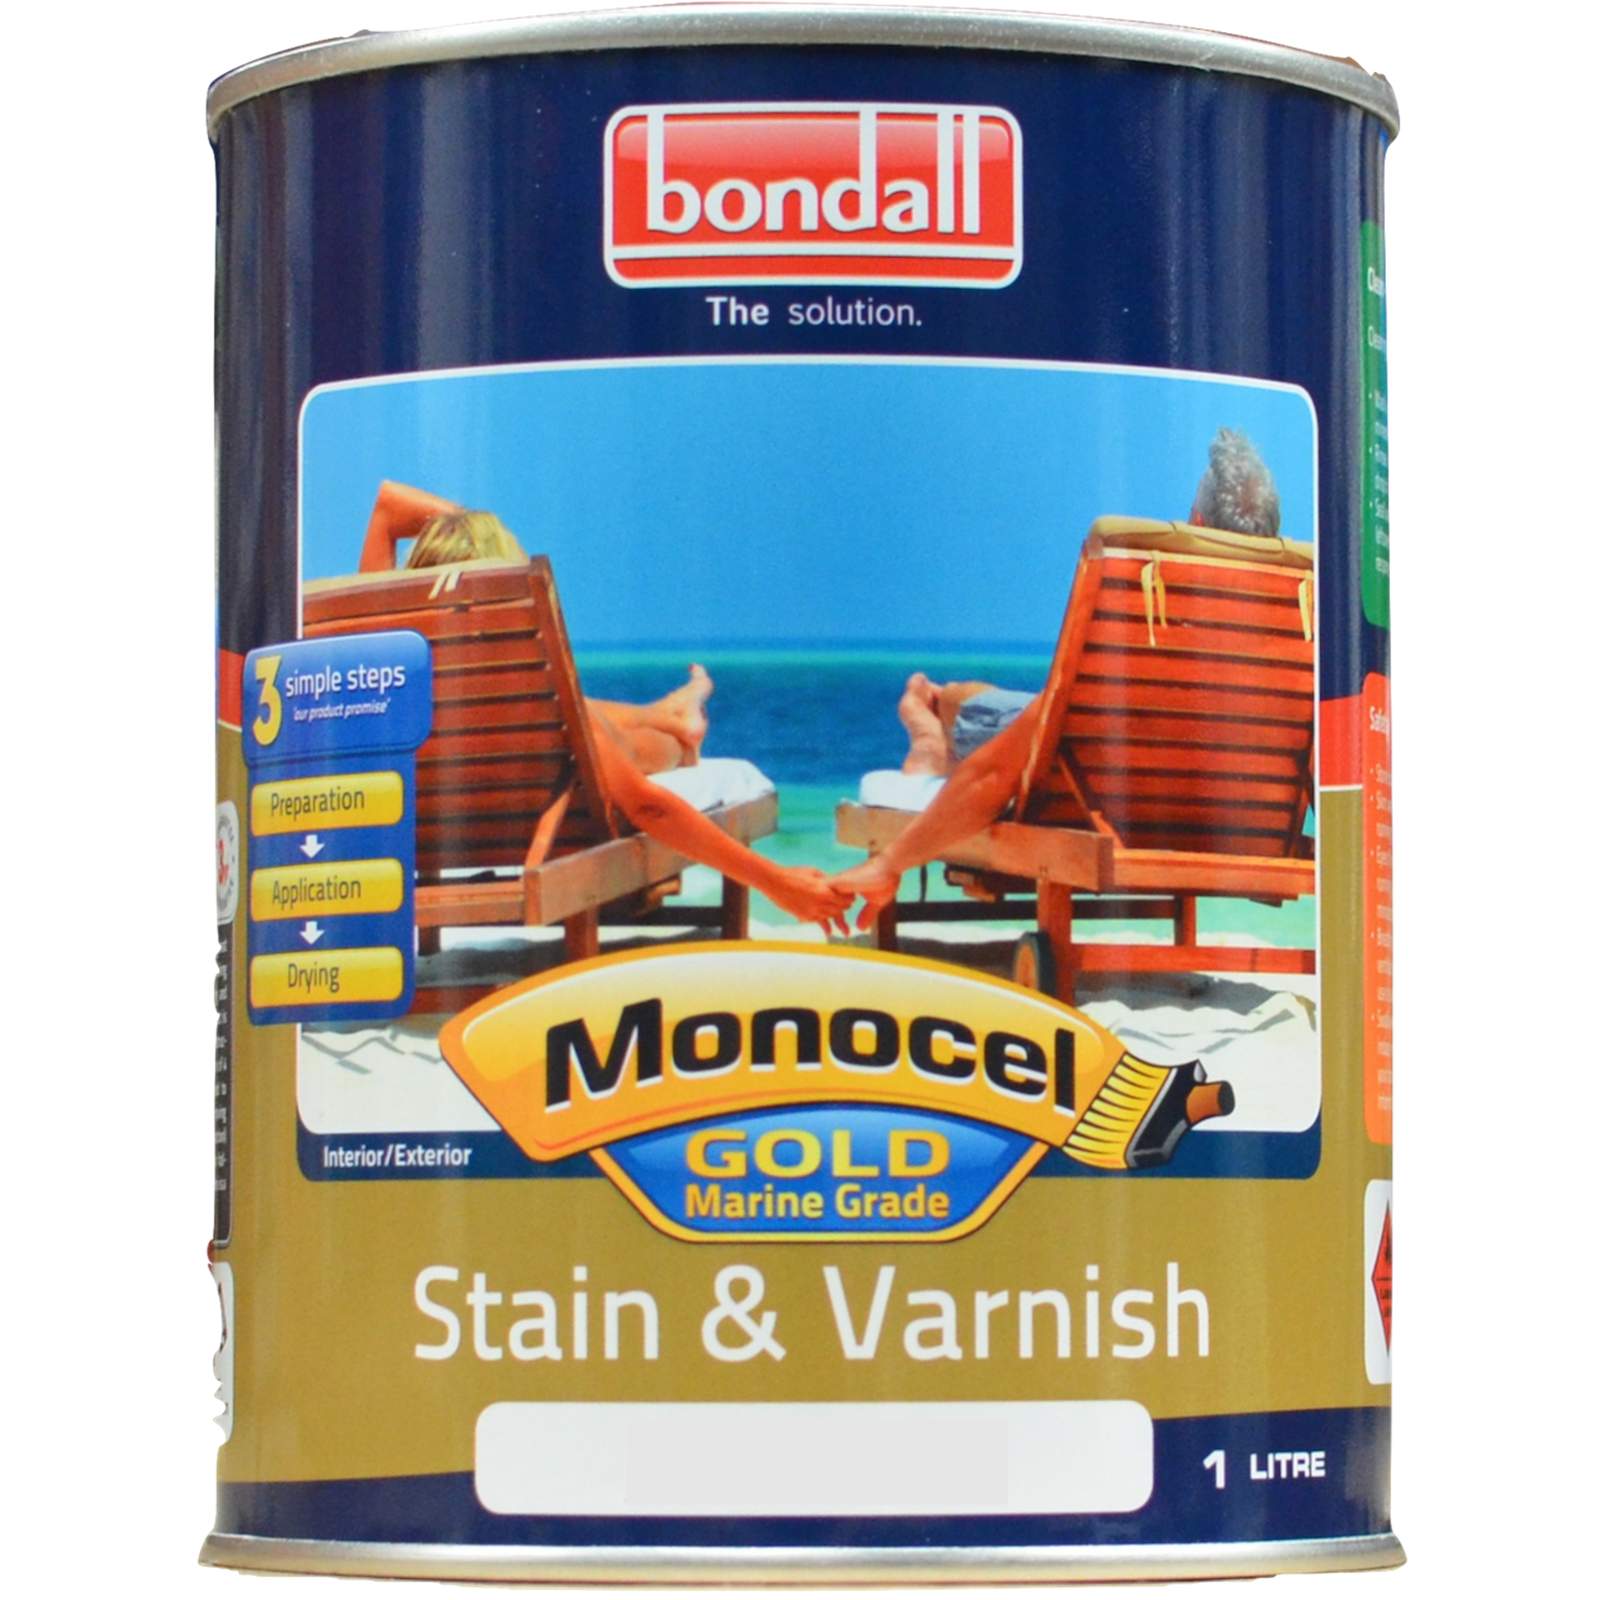 Bondall Monocel Gold 1L Cedar Marine Grade Stain and Varnish